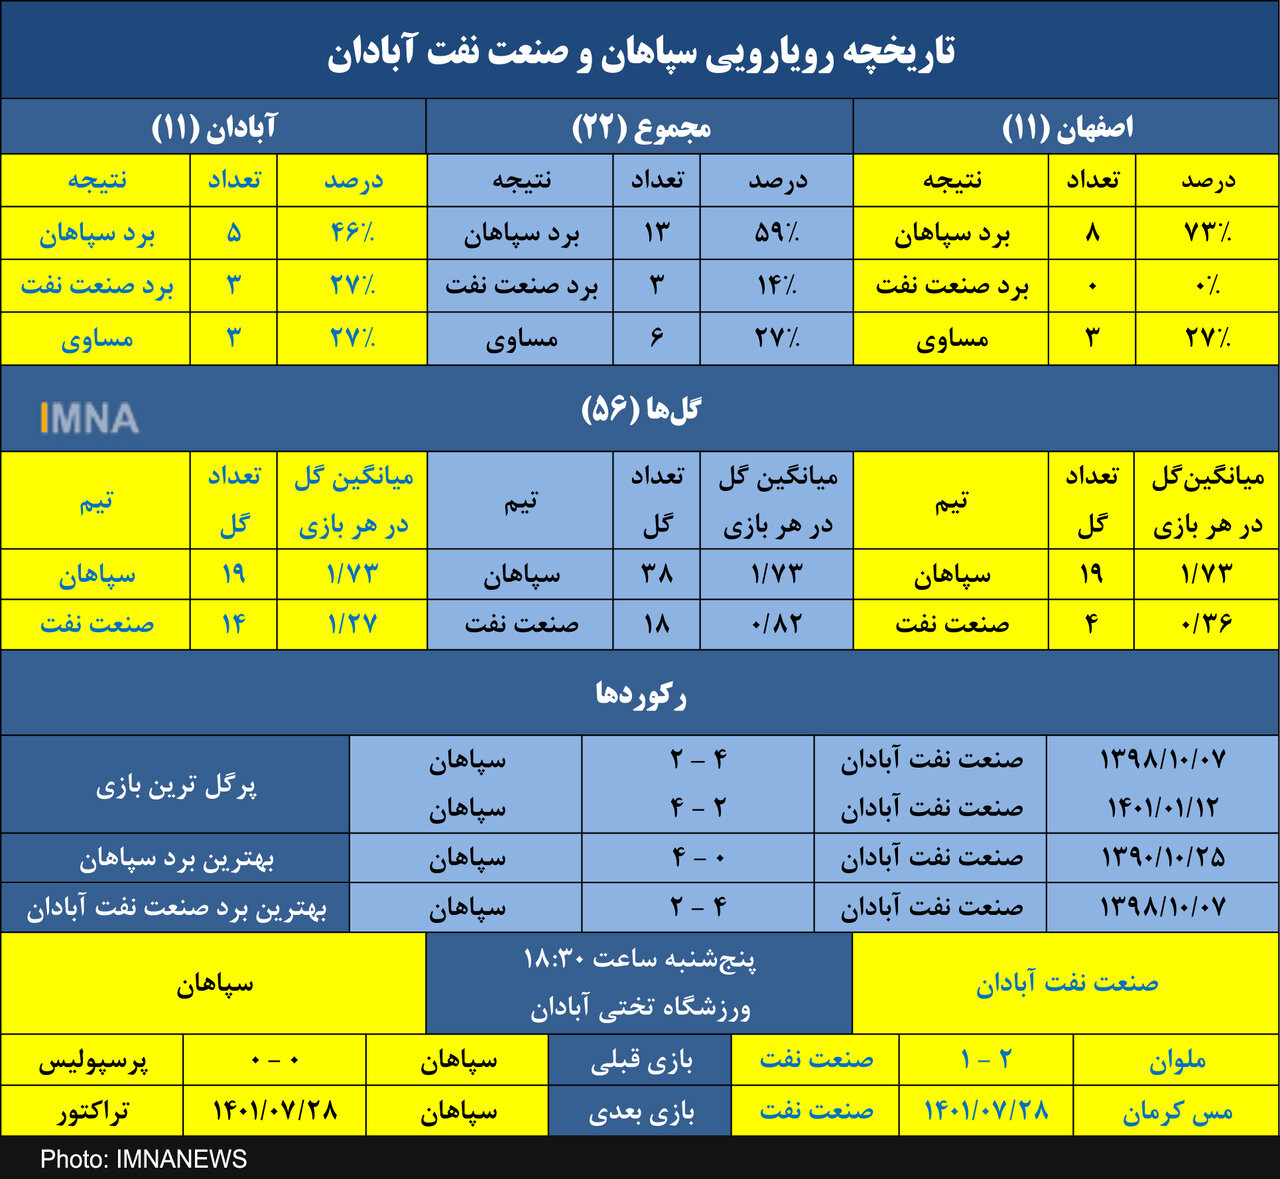 سپاهان به دنبال ششمین پیروزی متوالی مقابل صنعت نفت+ جدول